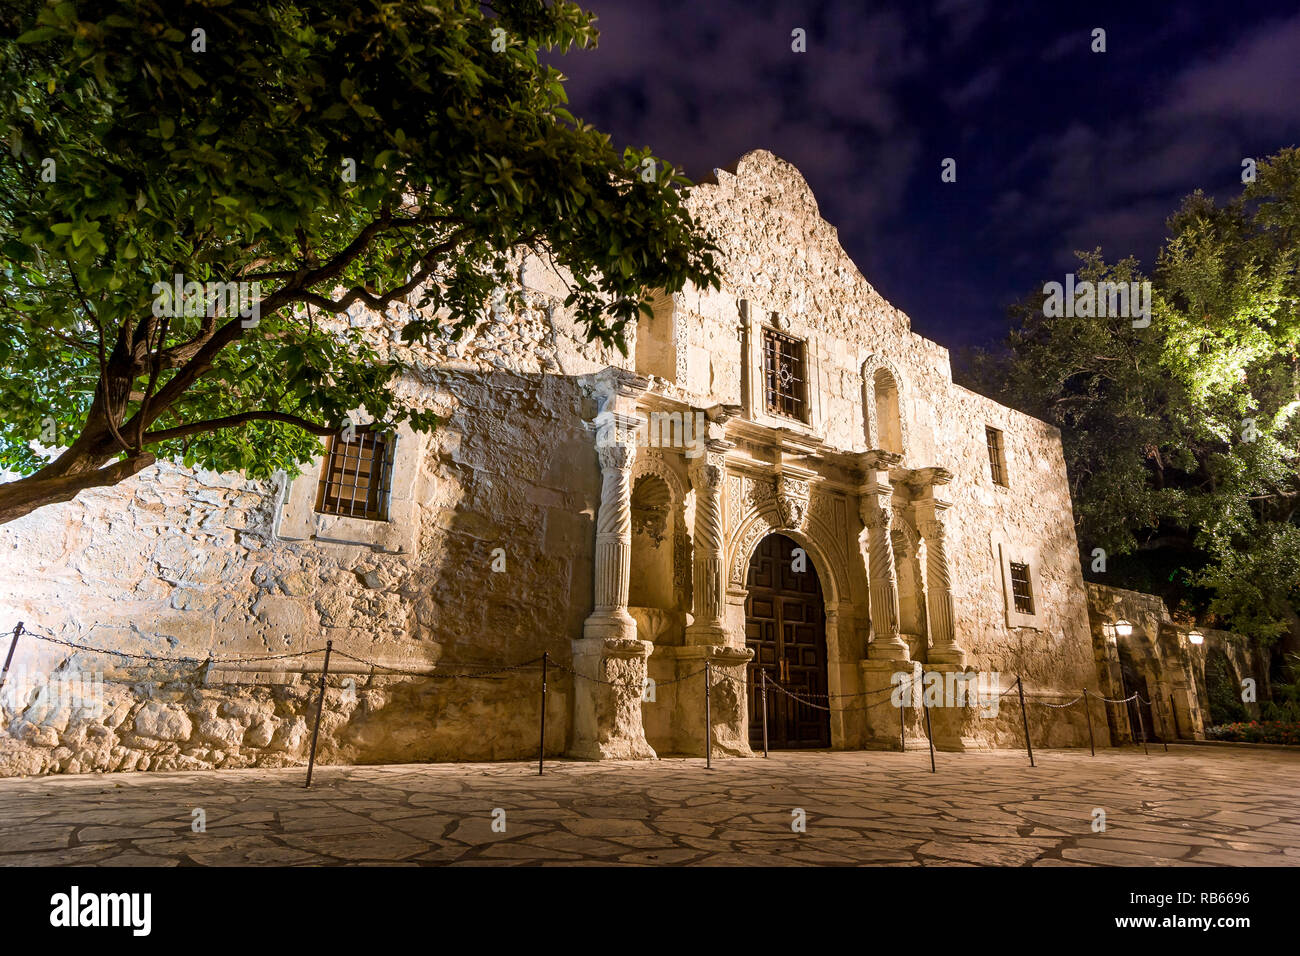 Die Alamo - Standort einer heroischen Schlacht für Texas' Unabhängigkeit von Mexiko in 1835, San Antonio, Texas, USA Stockfoto